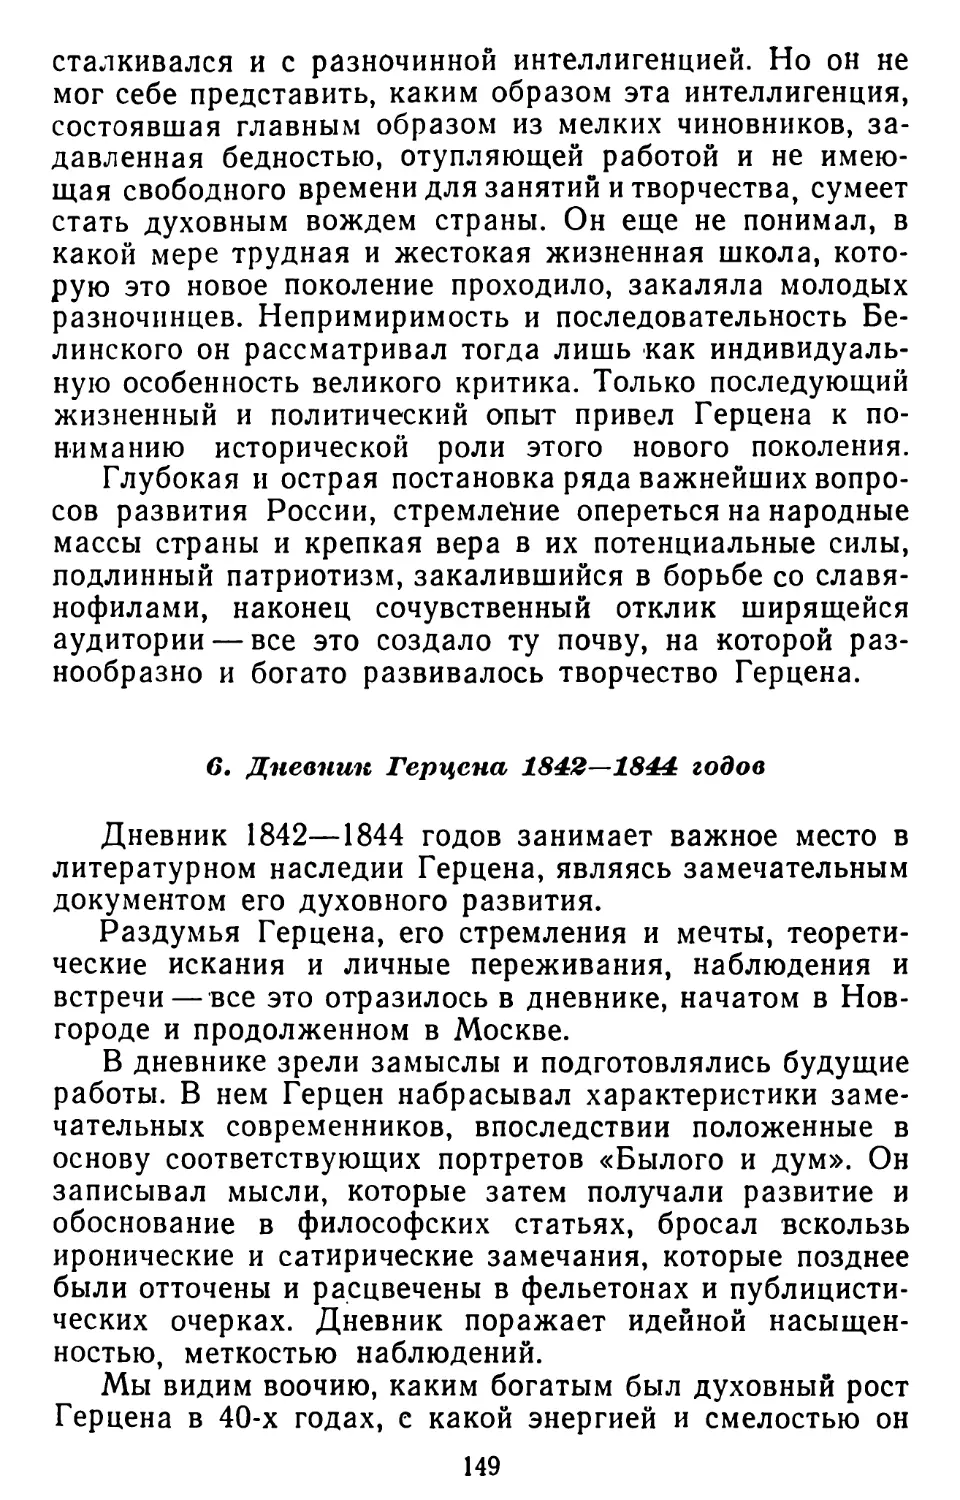 6. Дневник Герцена 1842—1844 годов